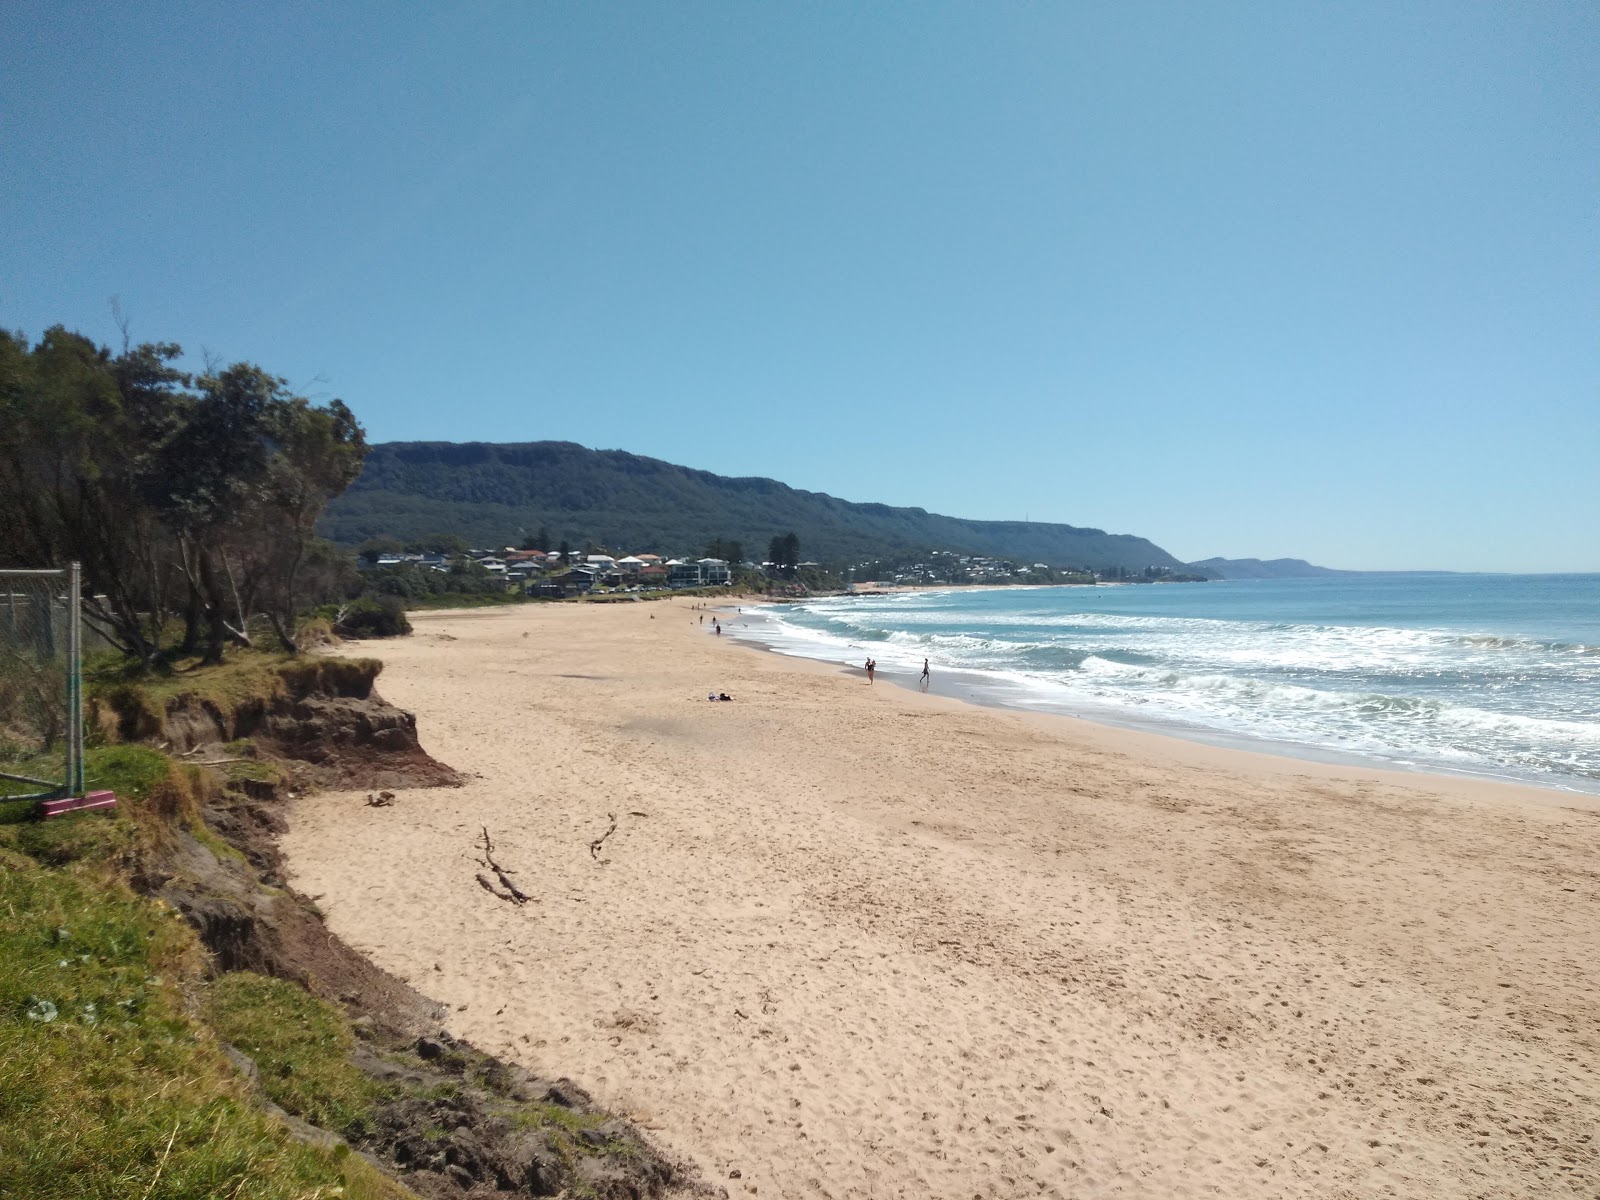 Photo de McCauley's Beach - endroit populaire parmi les connaisseurs de la détente